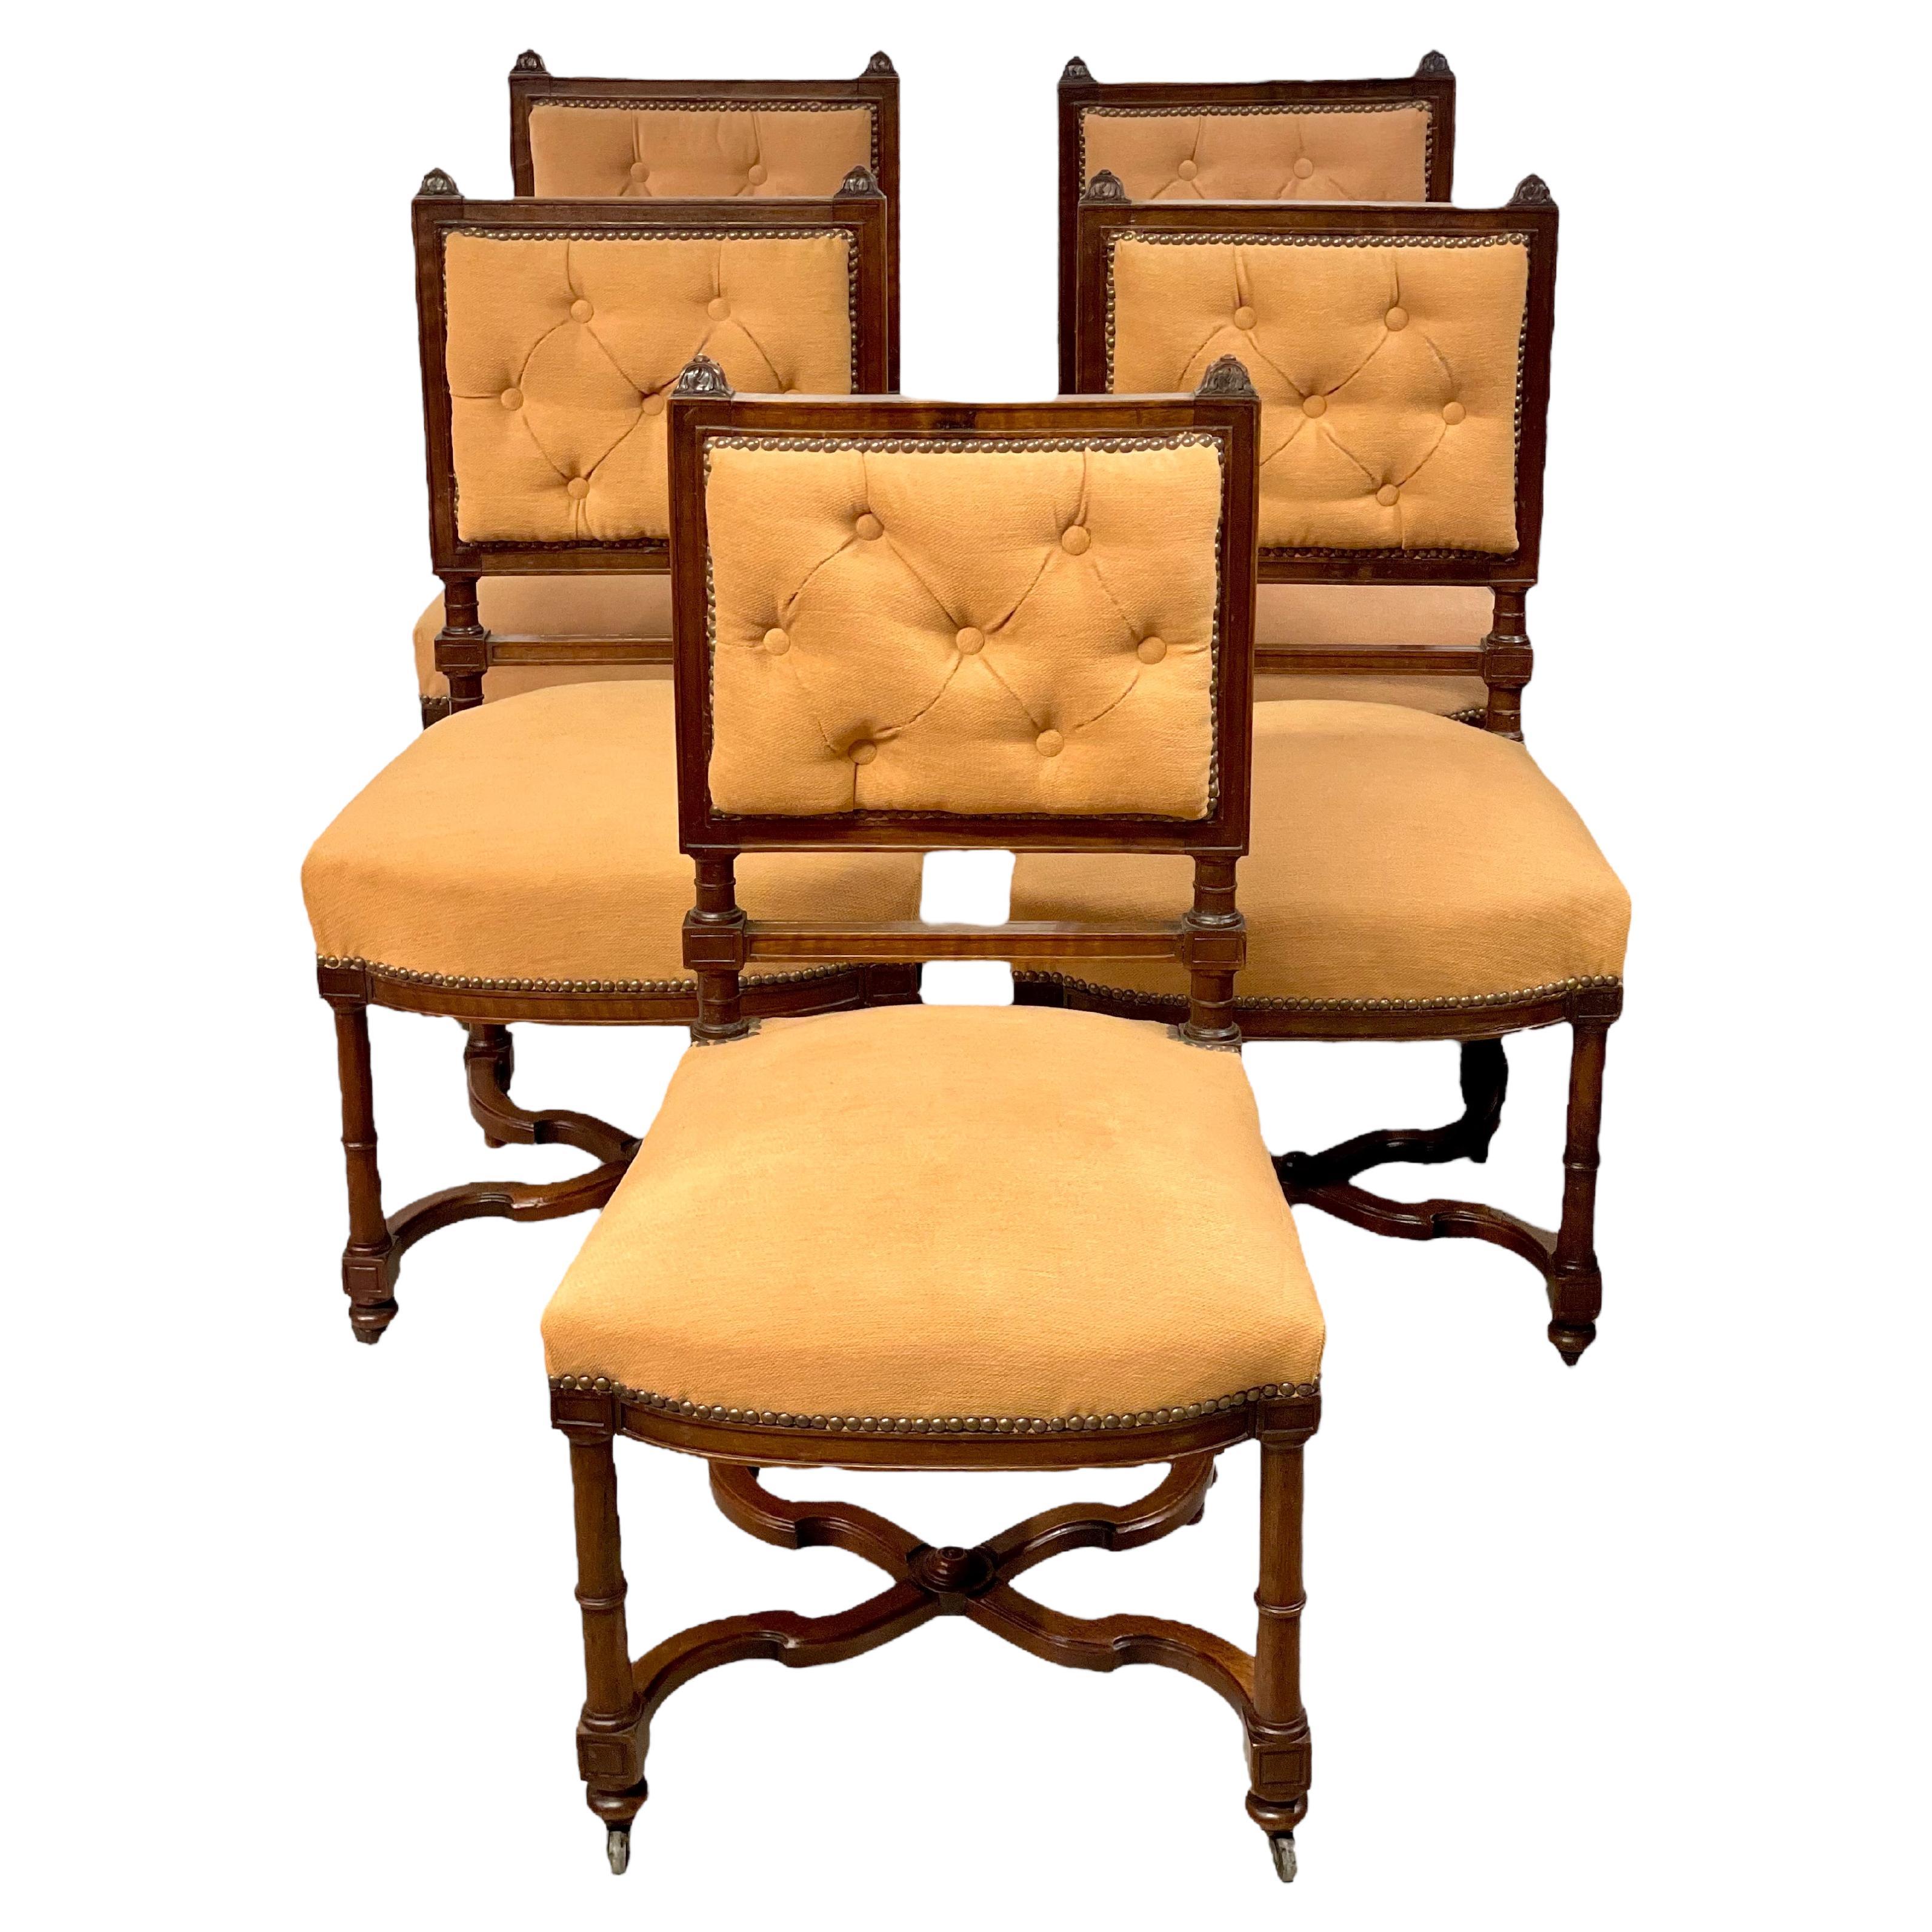 Ein sehr stilvoller Satz von fünf Esszimmerstühlen im Louis XIII-Stil, jeder mit einer gepolsterten, gerollten Rückenlehne und einem gepolsterten Sitz, gepolstert mit einem blassgoldenen Stoff und rundherum mit einer Nagelkopfverzierung versehen.